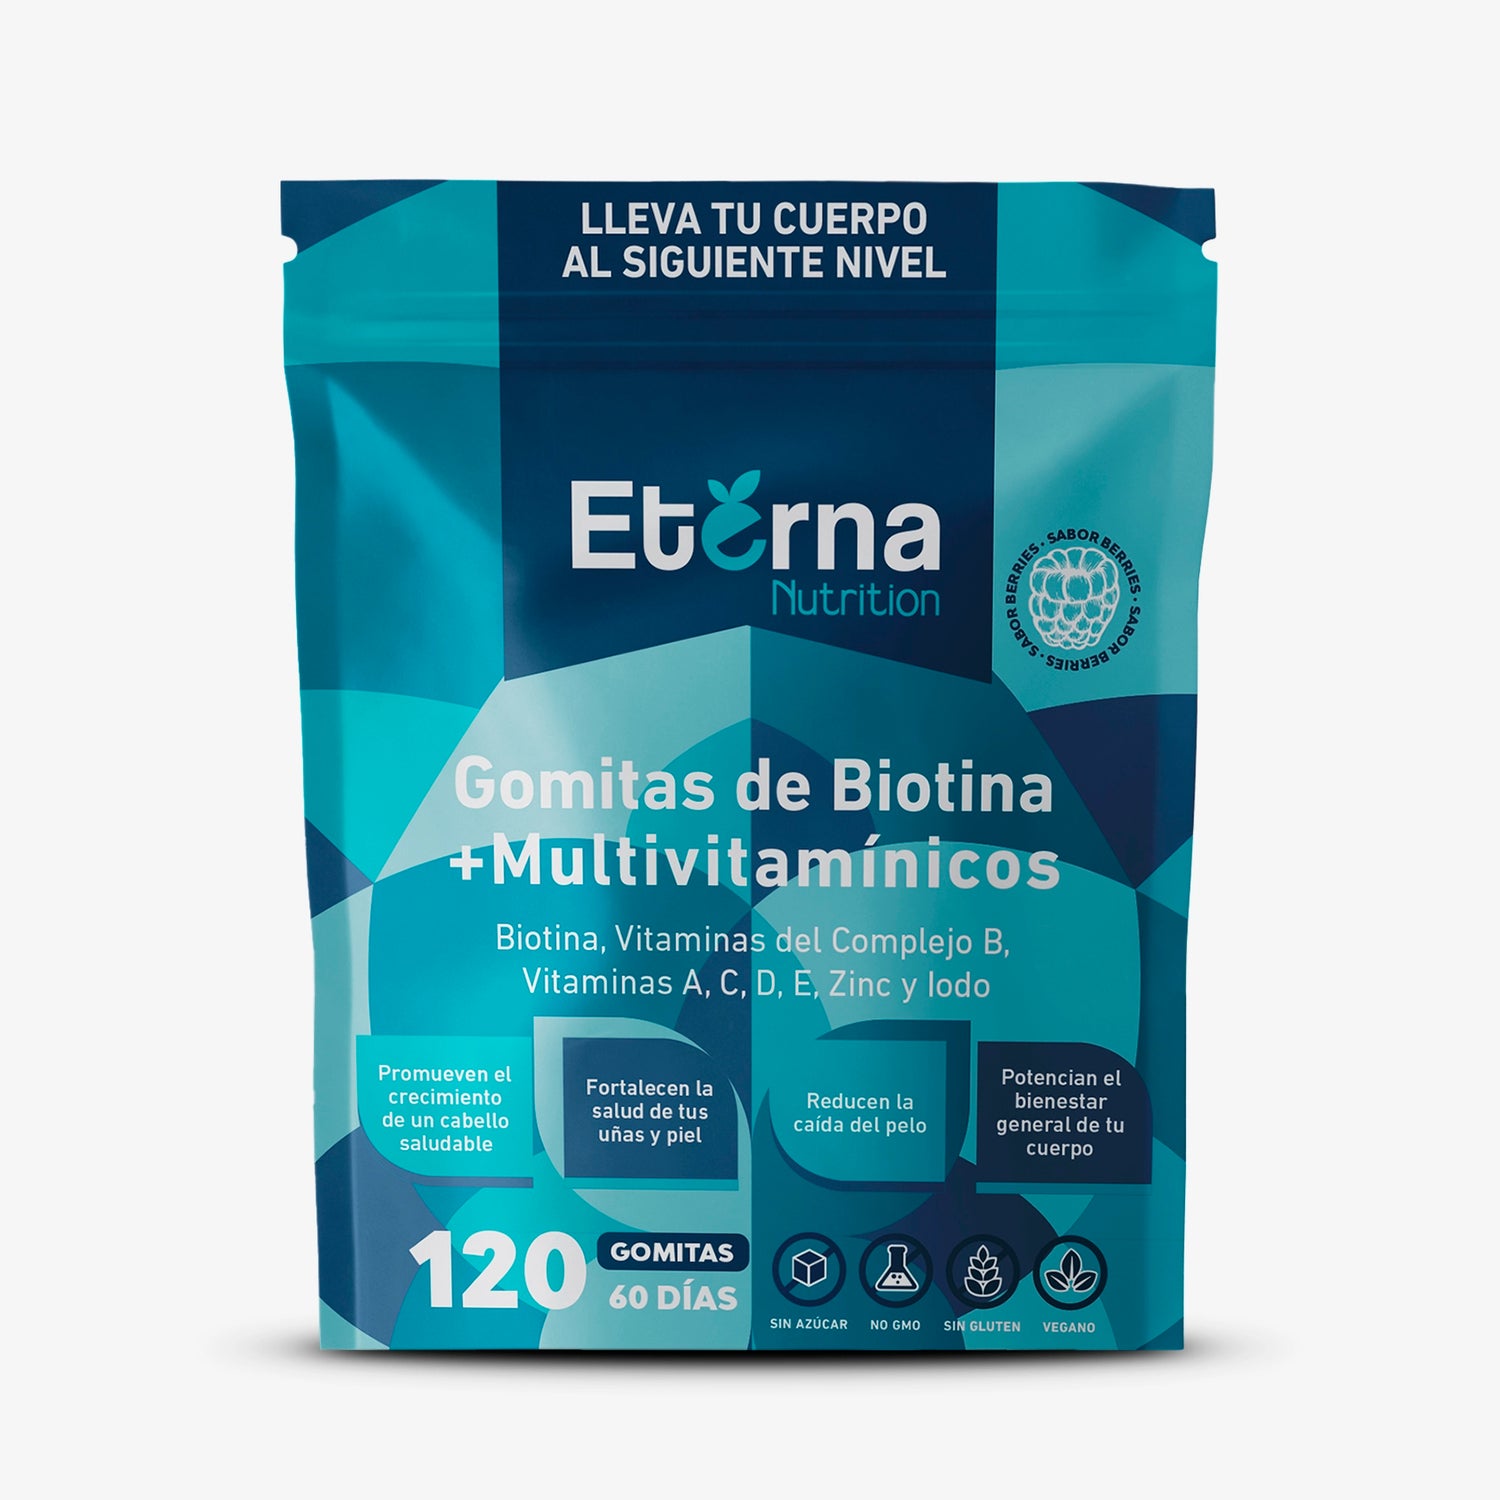 Bolsa de 120 gomitas de biotina con multivitamínico eterna nutrition vista frontal